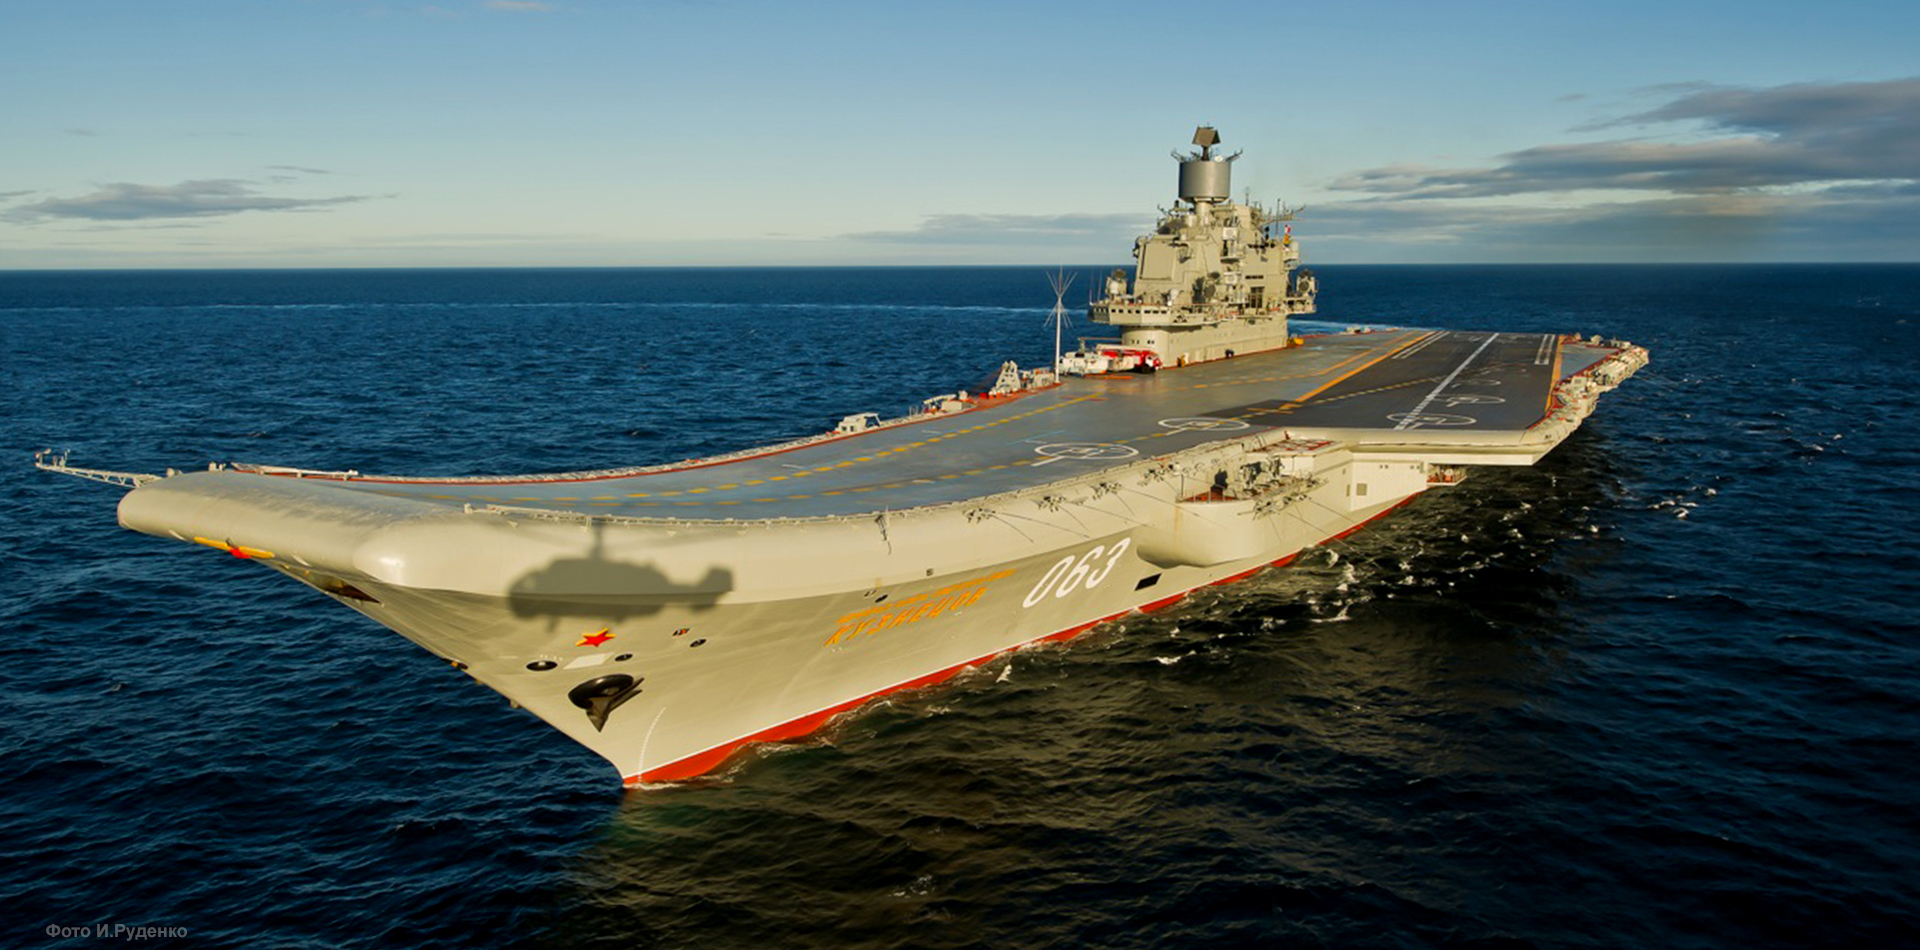 ТАСС: Крейсер "Адмирал Кузнецов" в мае встанет в док для ремонта